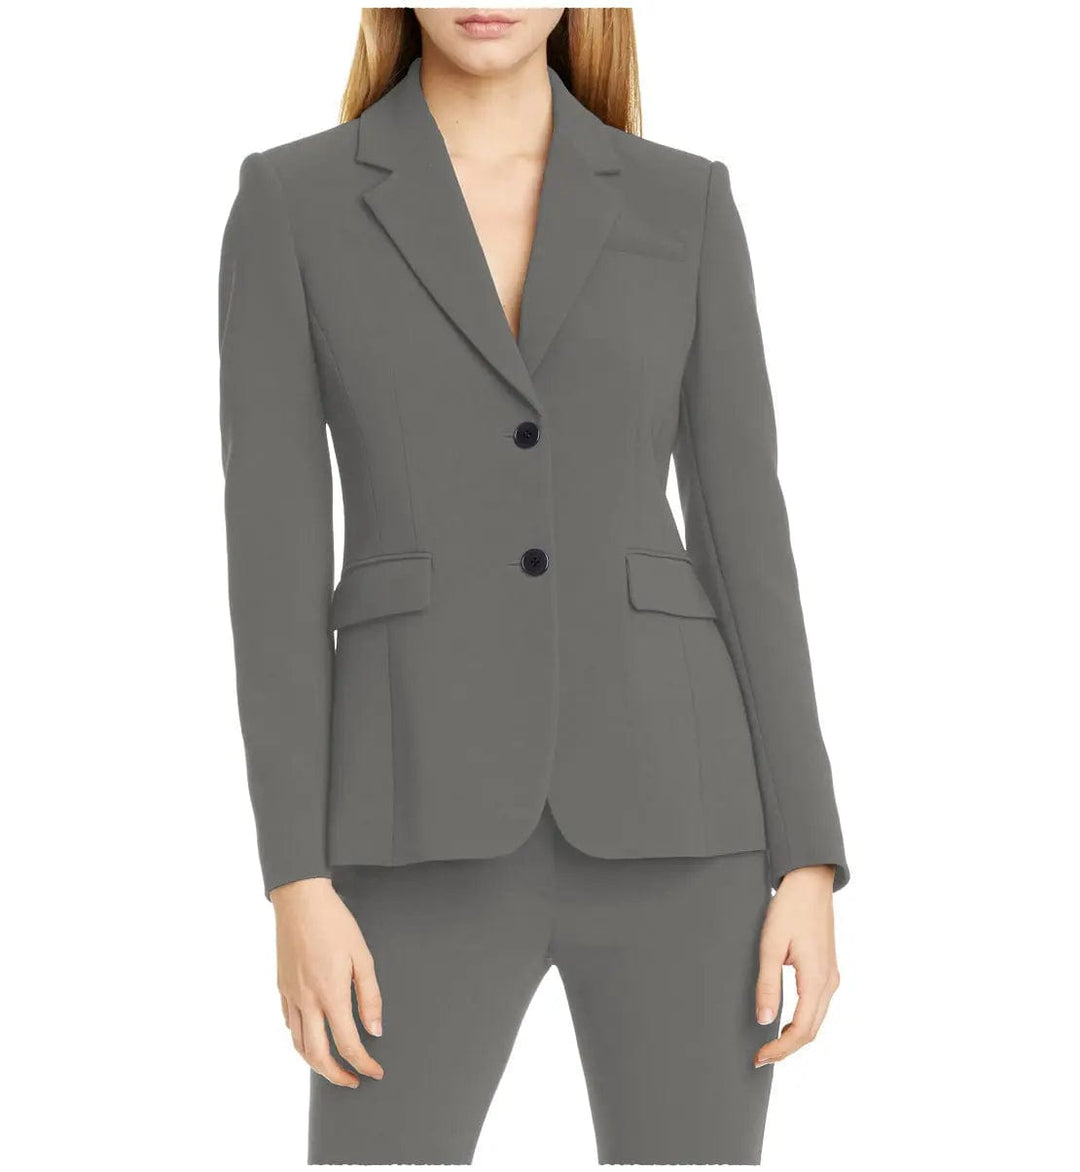 solovedress Formal Flat Double Buttons 2 Pieces Women Suit Notch Lapel Blazer